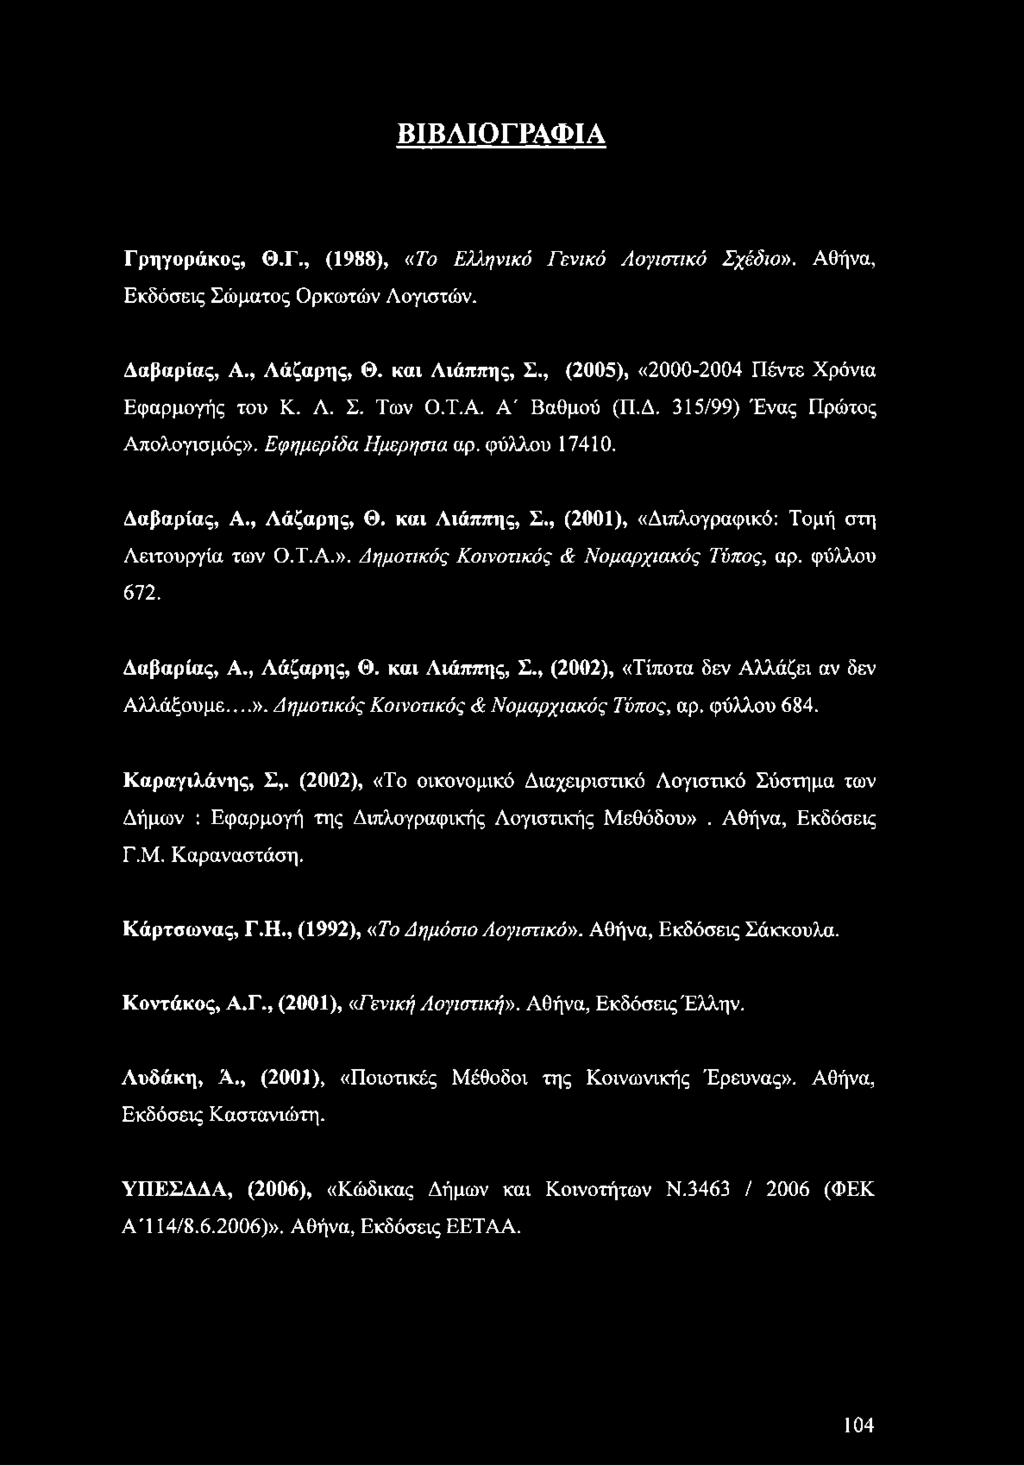 , (2001), «Διπλογραφικό: Τομή στη Λειτουργία των Ο.Τ.Α.». Δημοτικός Κοινοτικός & Νομαρχιακός Τύπος, αρ. φύλλου 672. Δαβαρίας, Α., Αάζαρης, Θ. και Λιάππης, Σ.